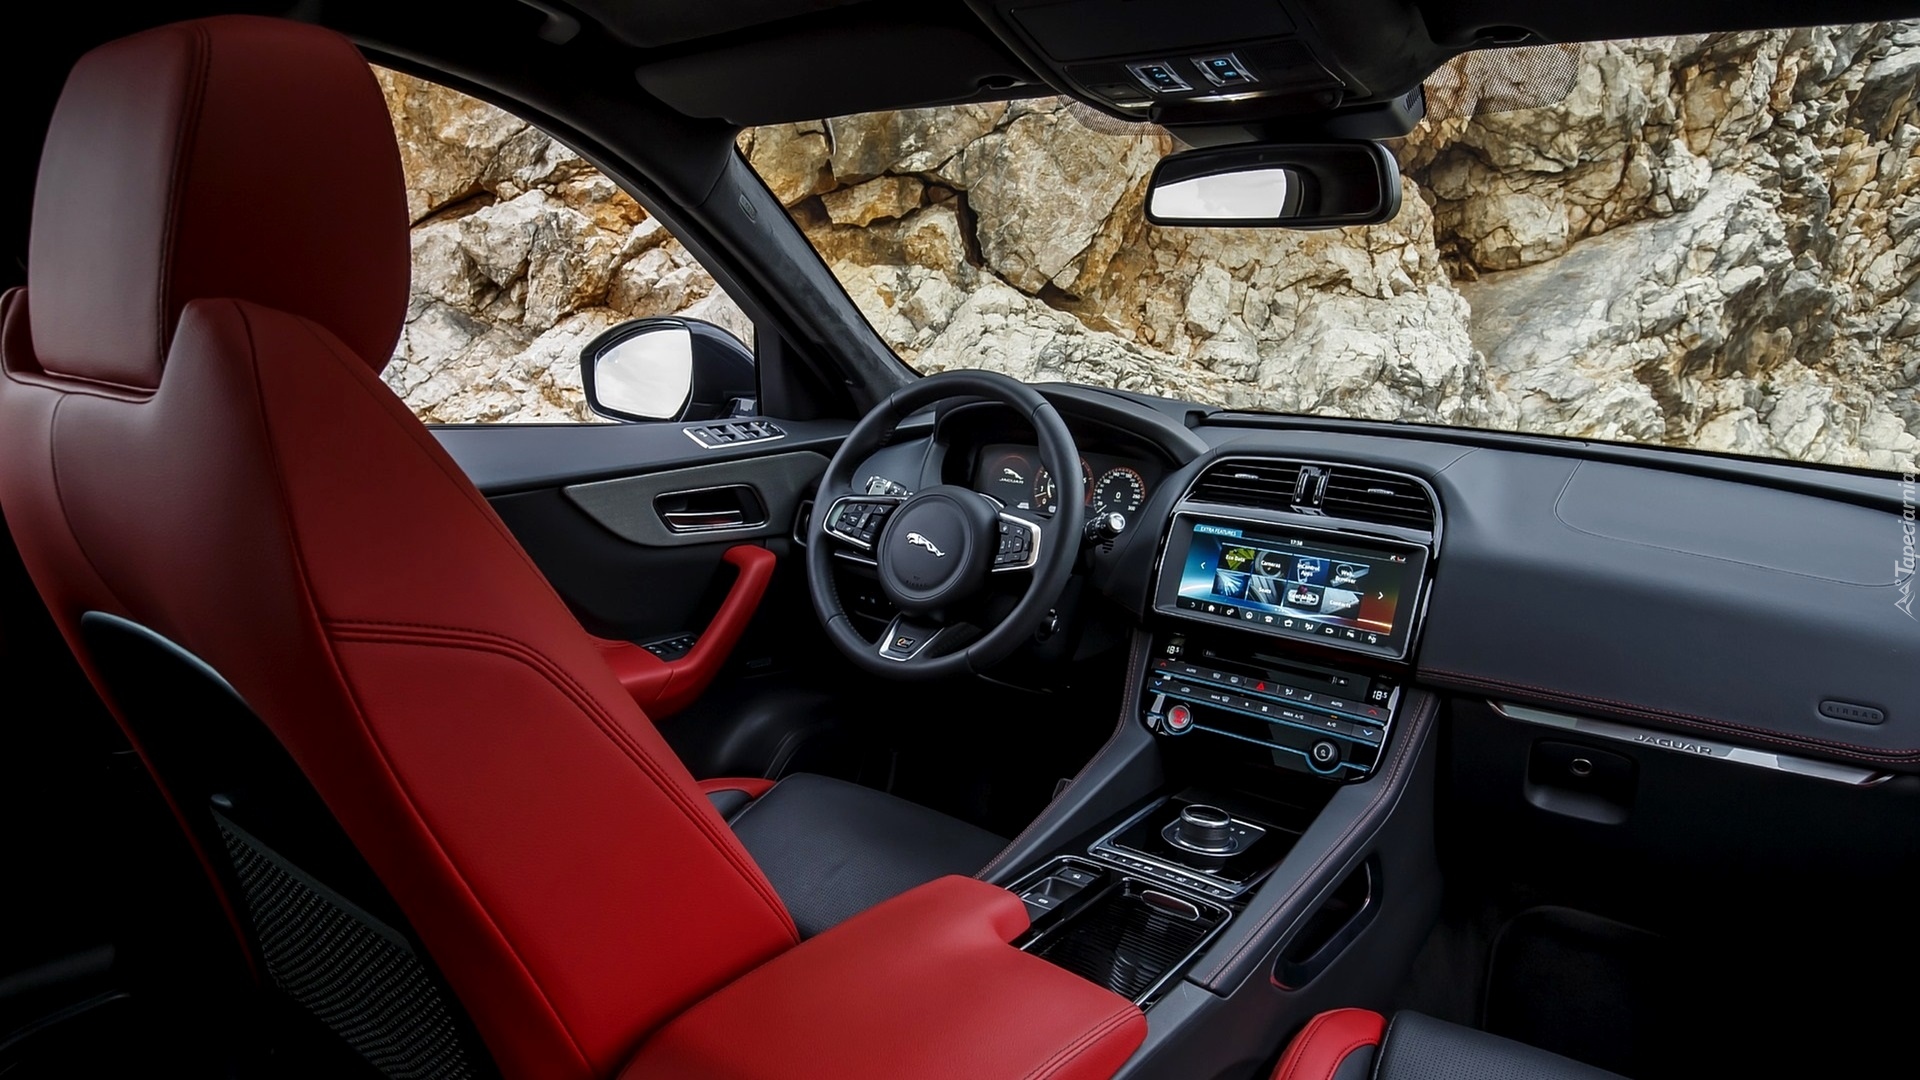 Wnętrze samochodu Jaguar FPace rocznik 2017